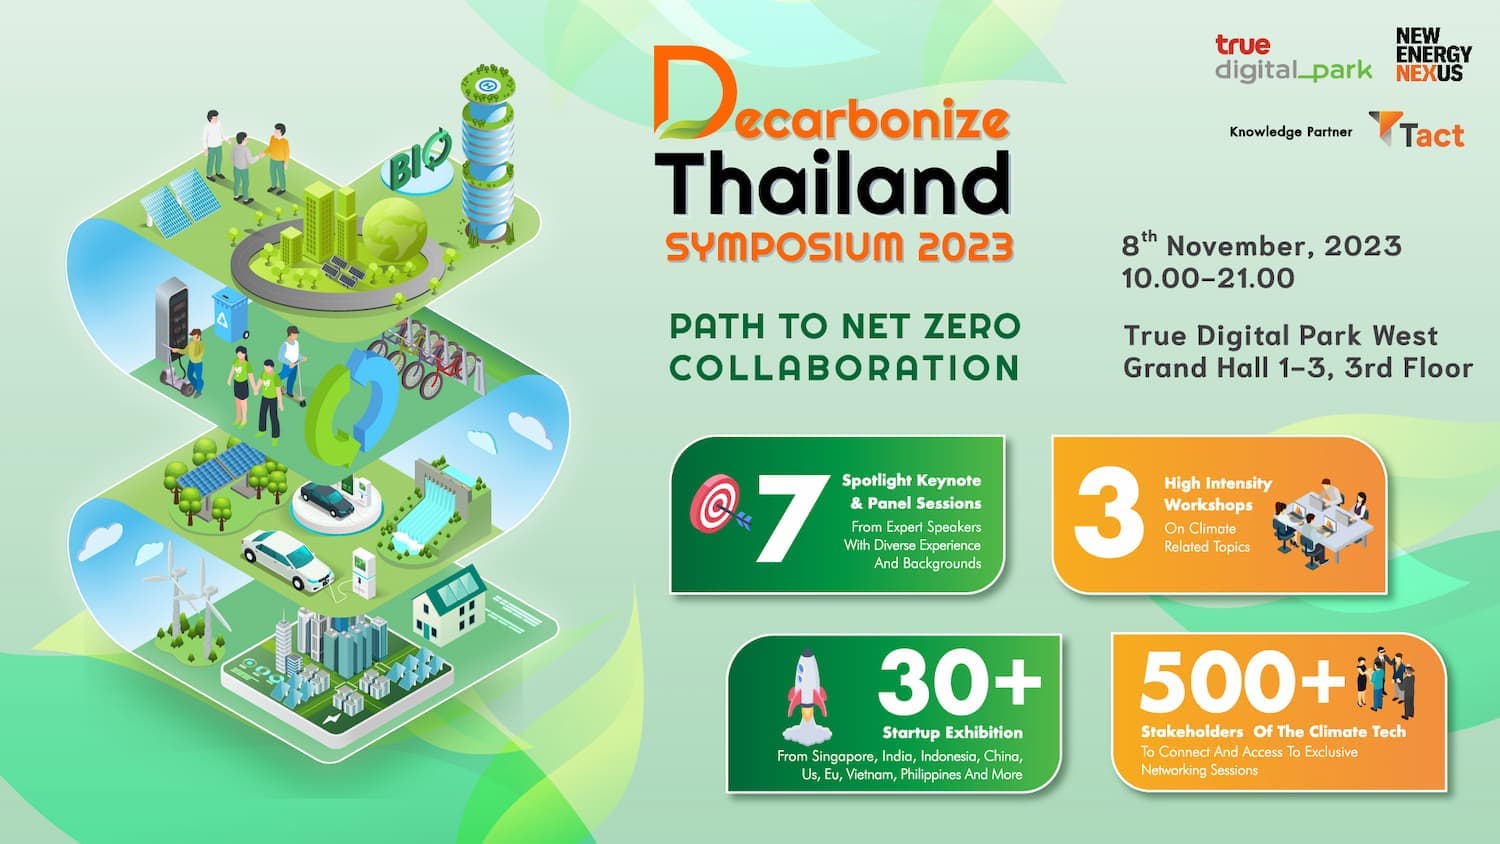 Decarbonize Thailand Symposium 2023 coming this November